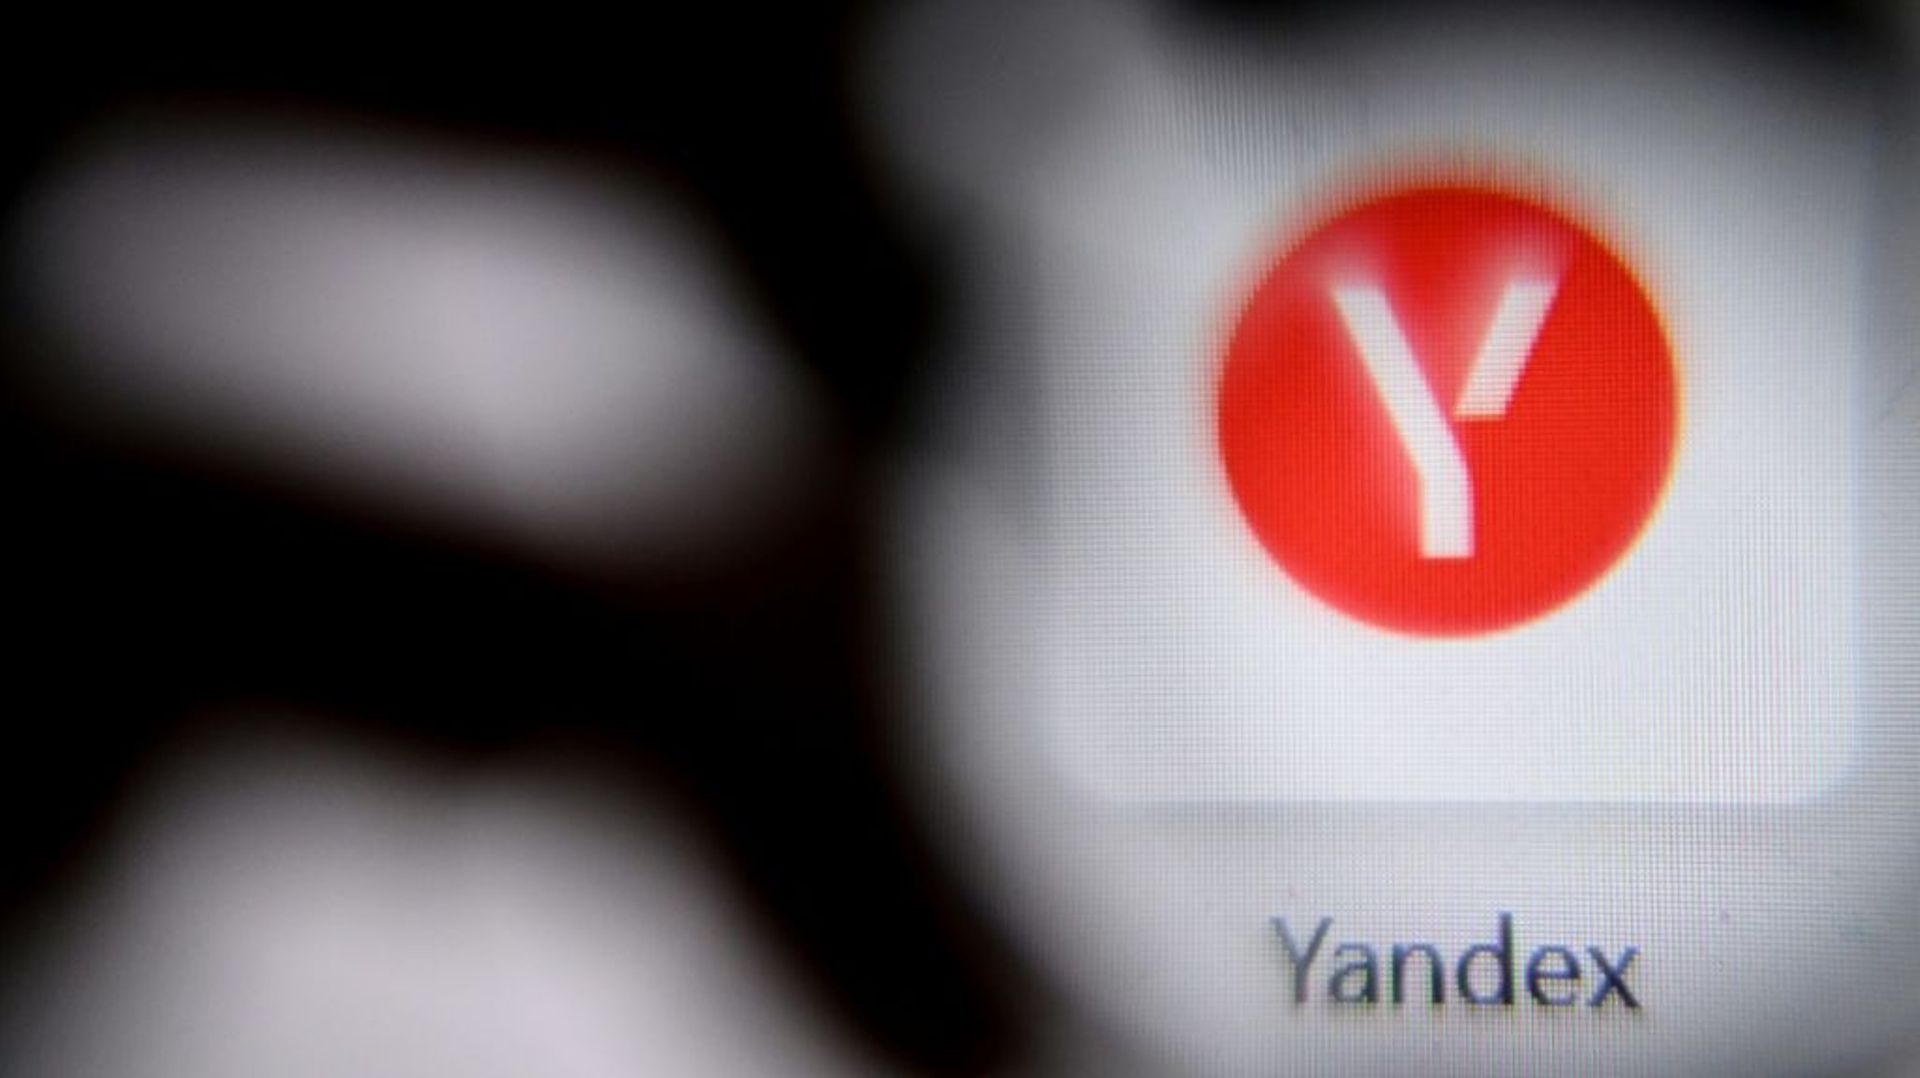 Yandex est le premier portail de recherche de l’espace russophone